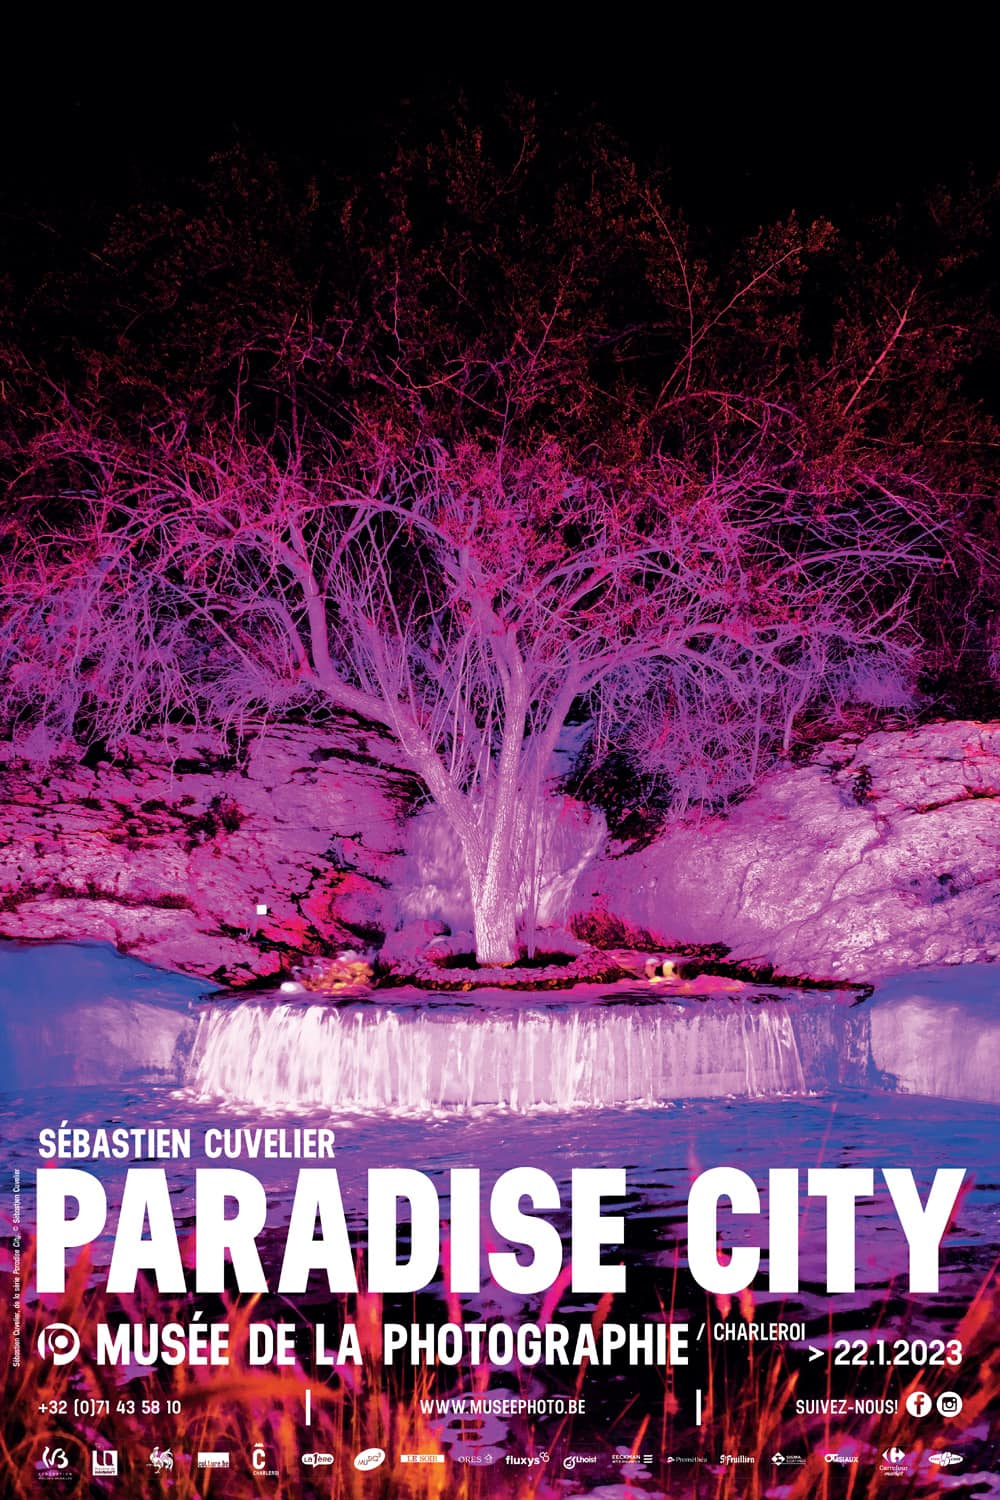 Sébastien Cuvelier<br />
"Paradise City"